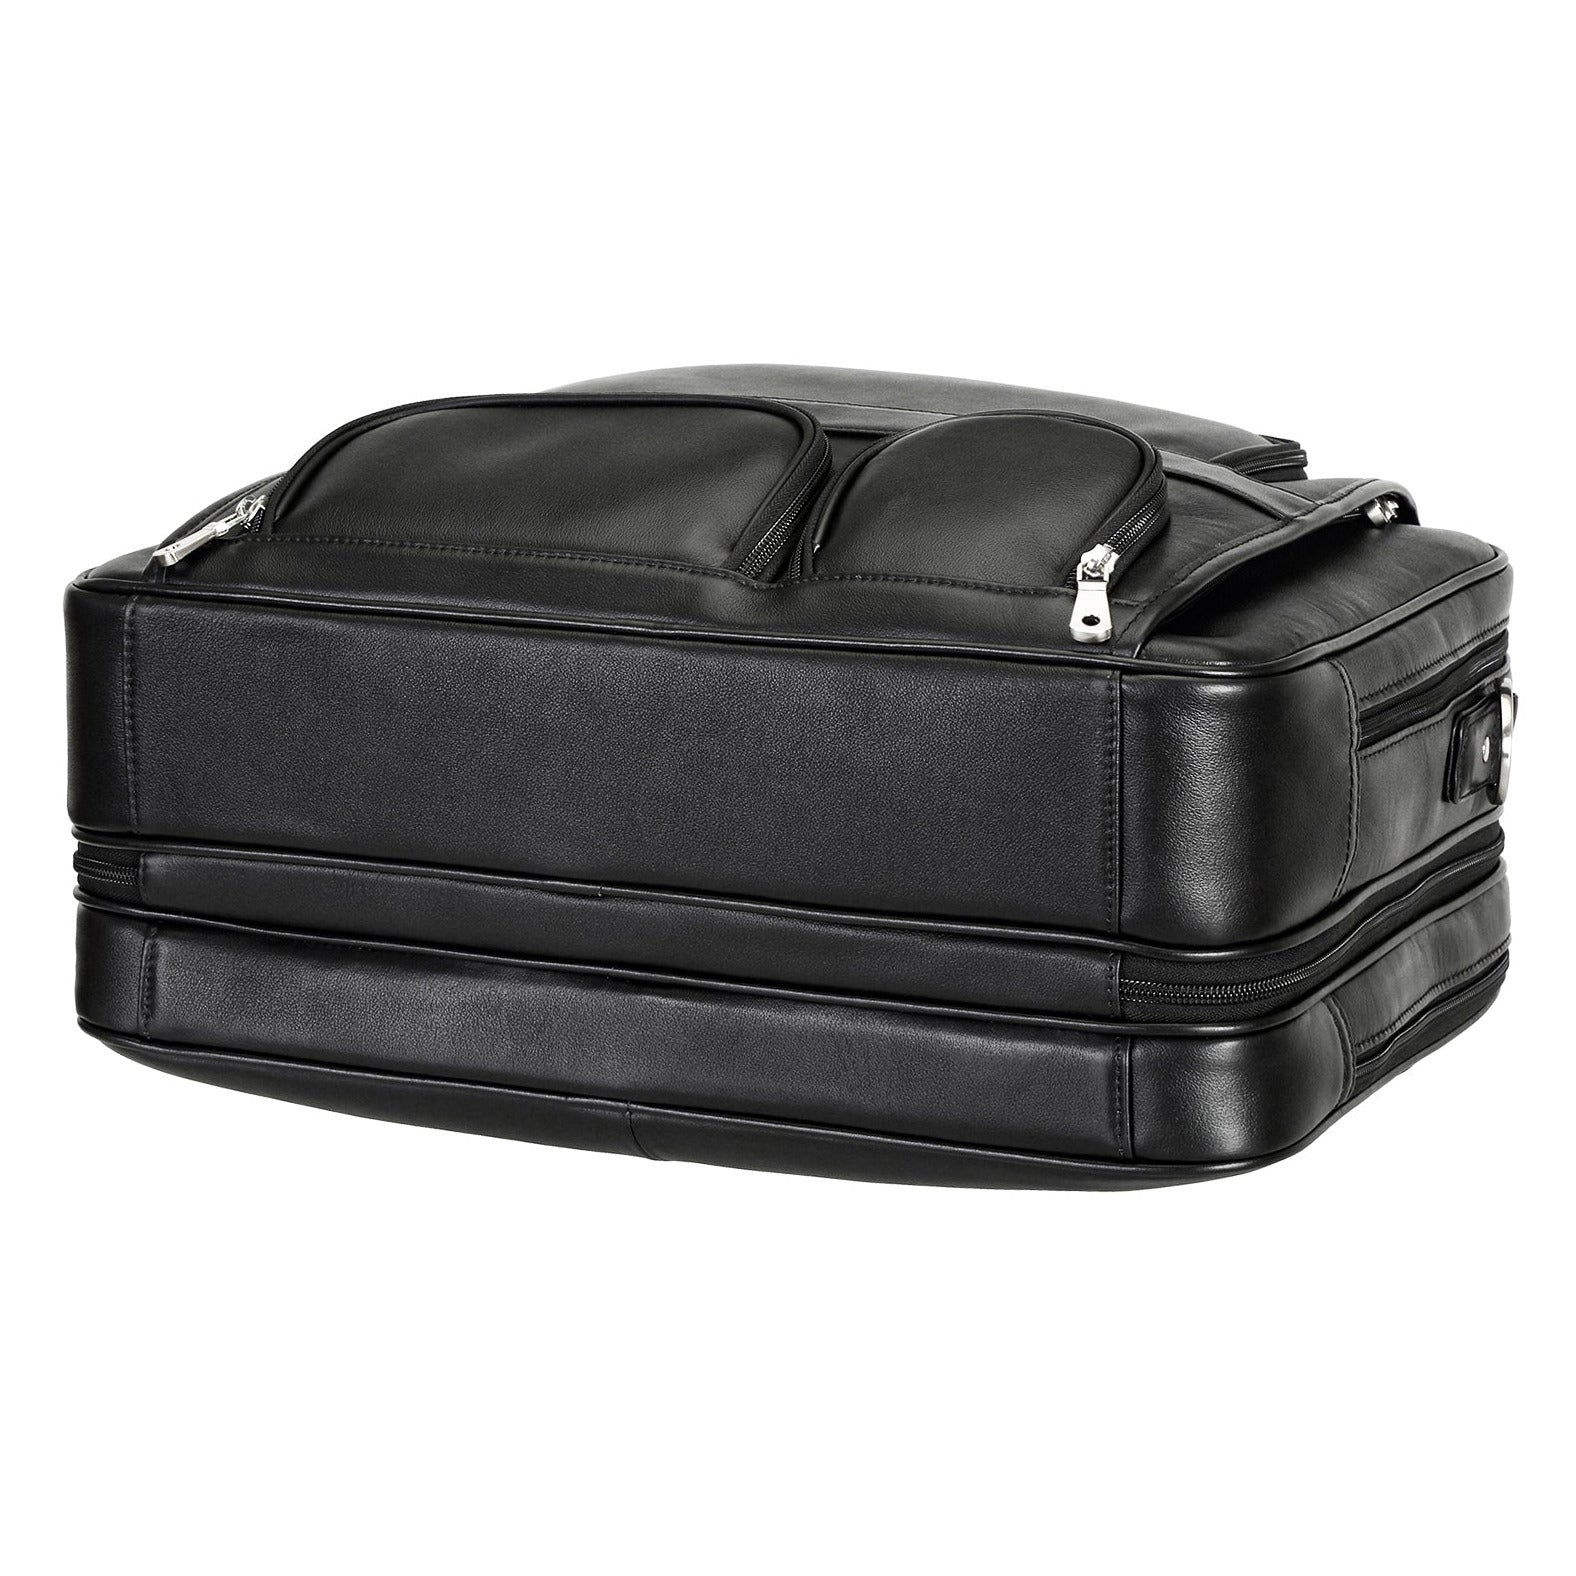 Solid Black Office Leather Laptop Bag, Size: 41 X 9 X 29 cm (l X B X H)